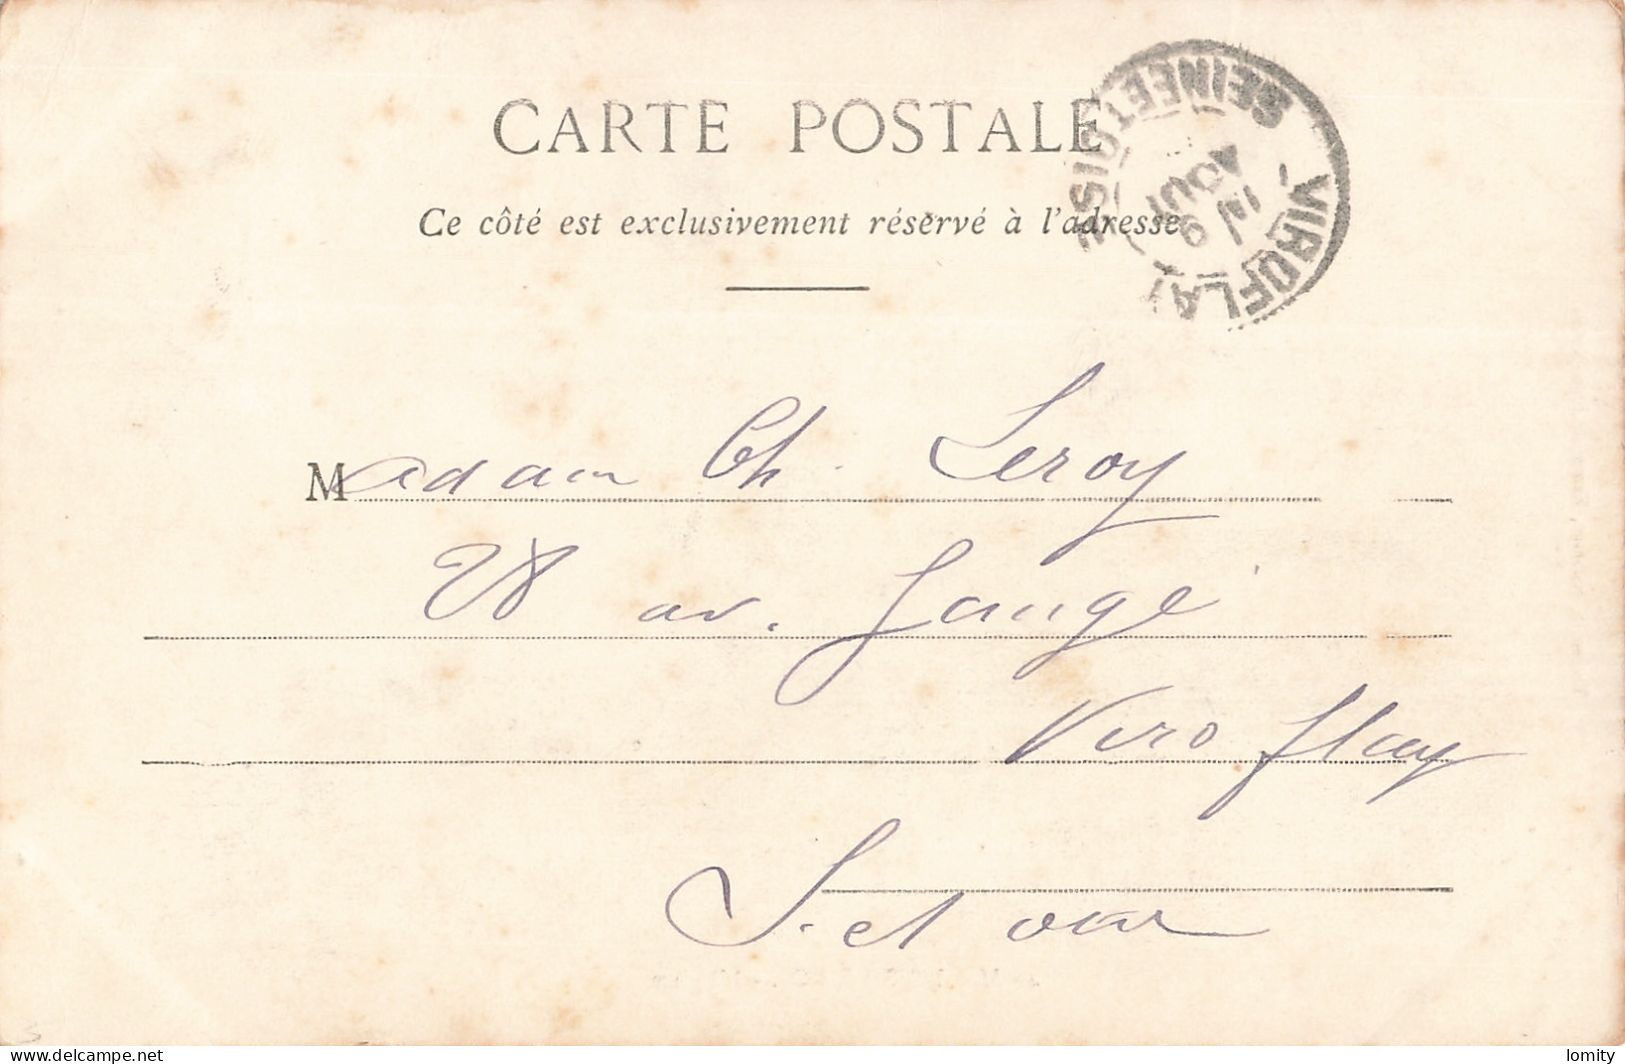 Destockage lot de 35 cartes postales CPA Seine et Marne Melun coulommiers foret Fontainebleau Tournan Provins Marles